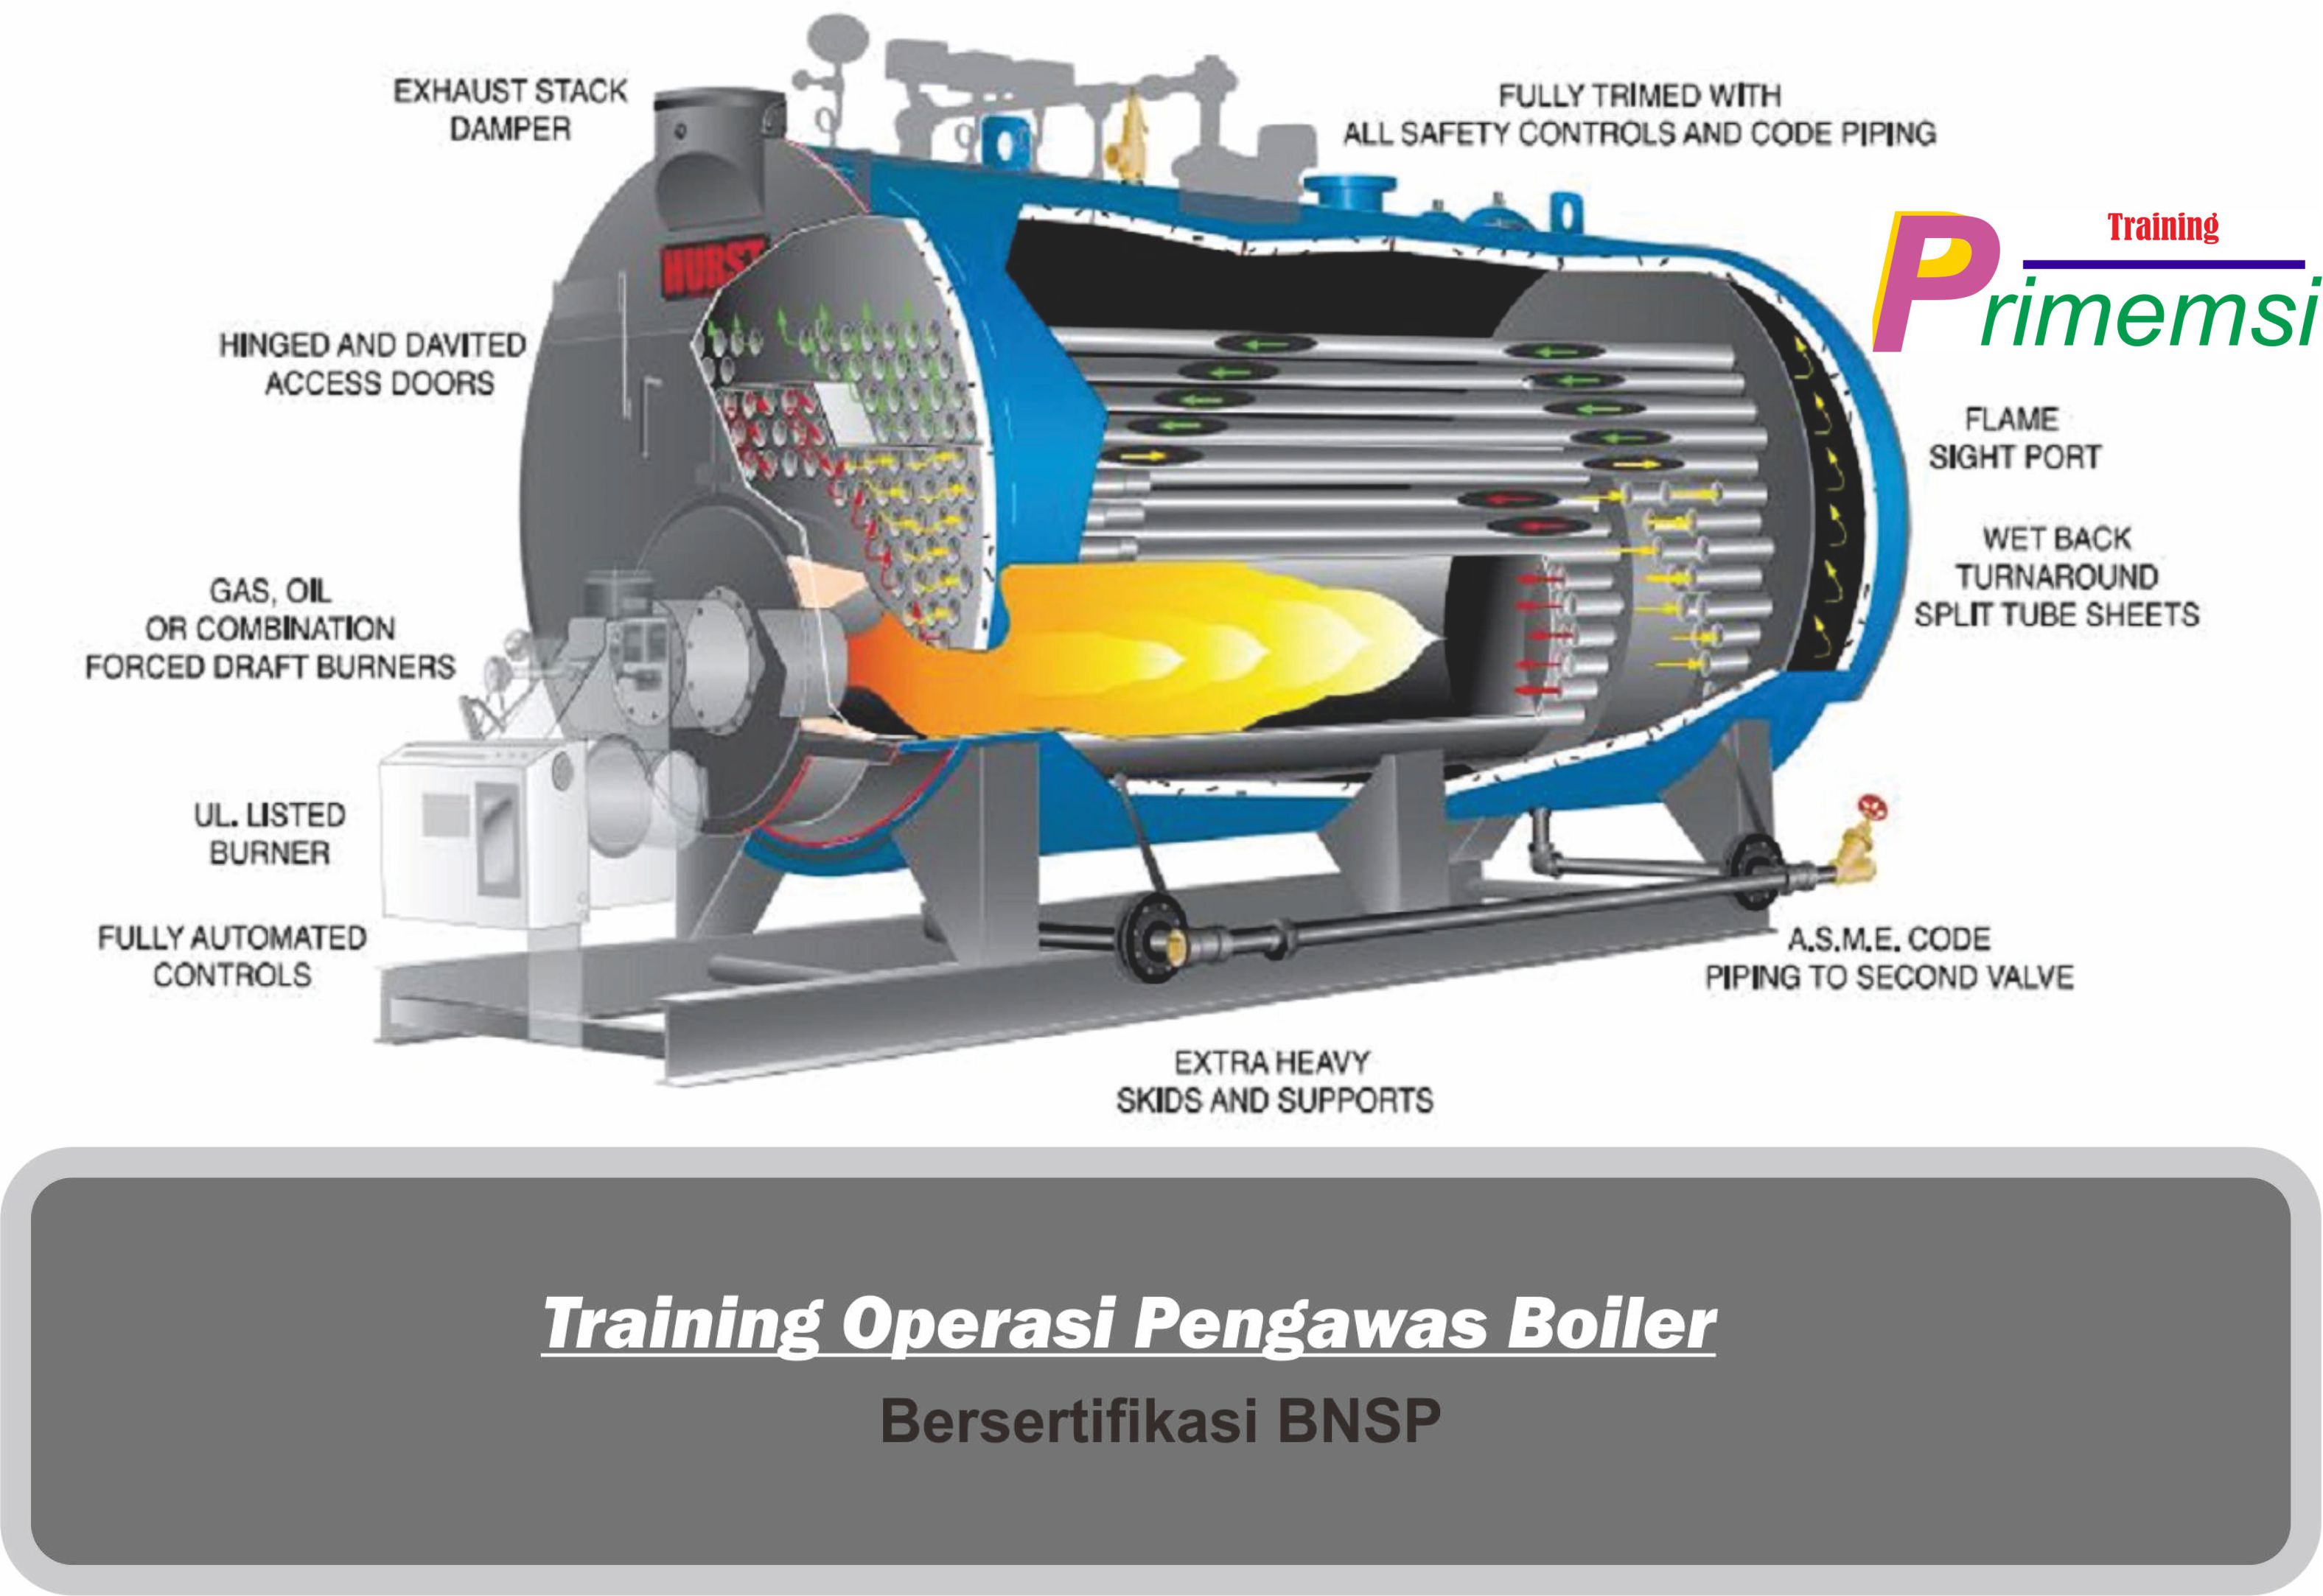 training operasi pengawas boiler bersertifikasi bnsp